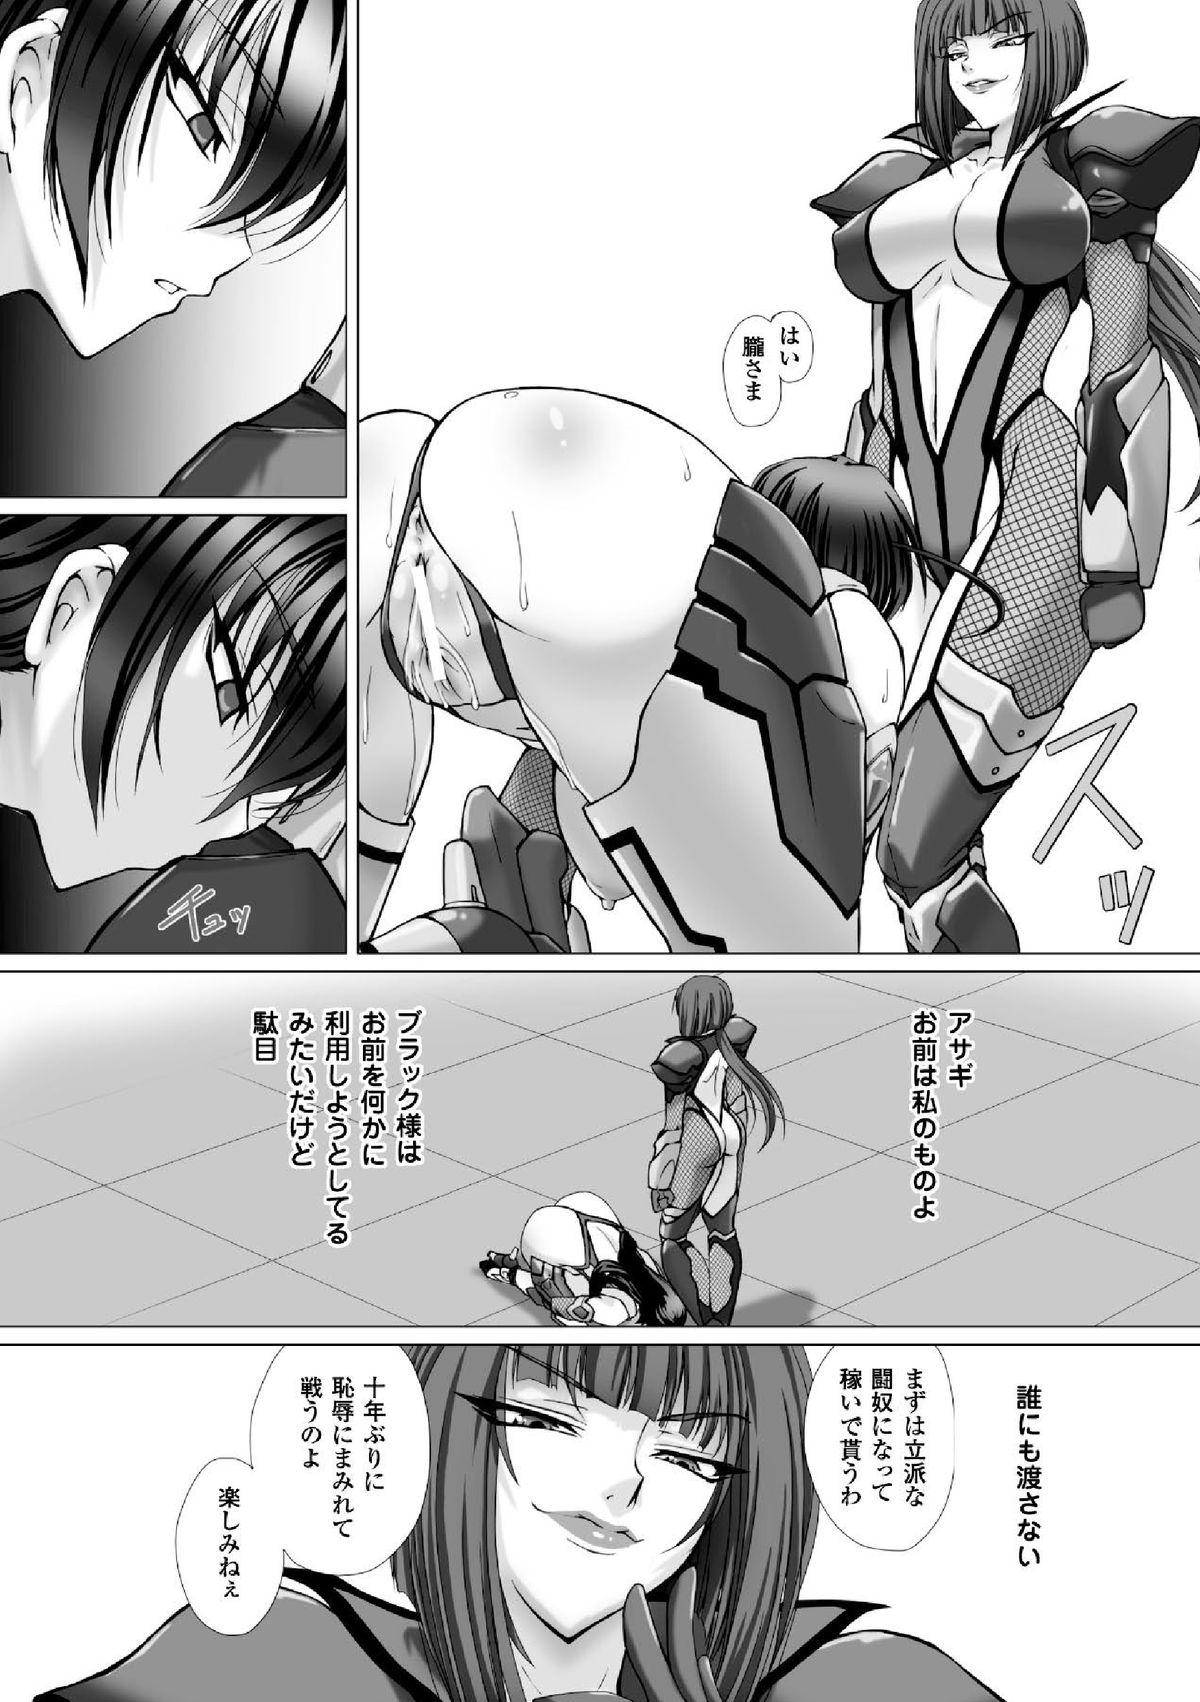 1080p Megami Crisis 16 - Taimanin asagi Kangoku senkan Koutetsu no majo annerose Teen - Page 10